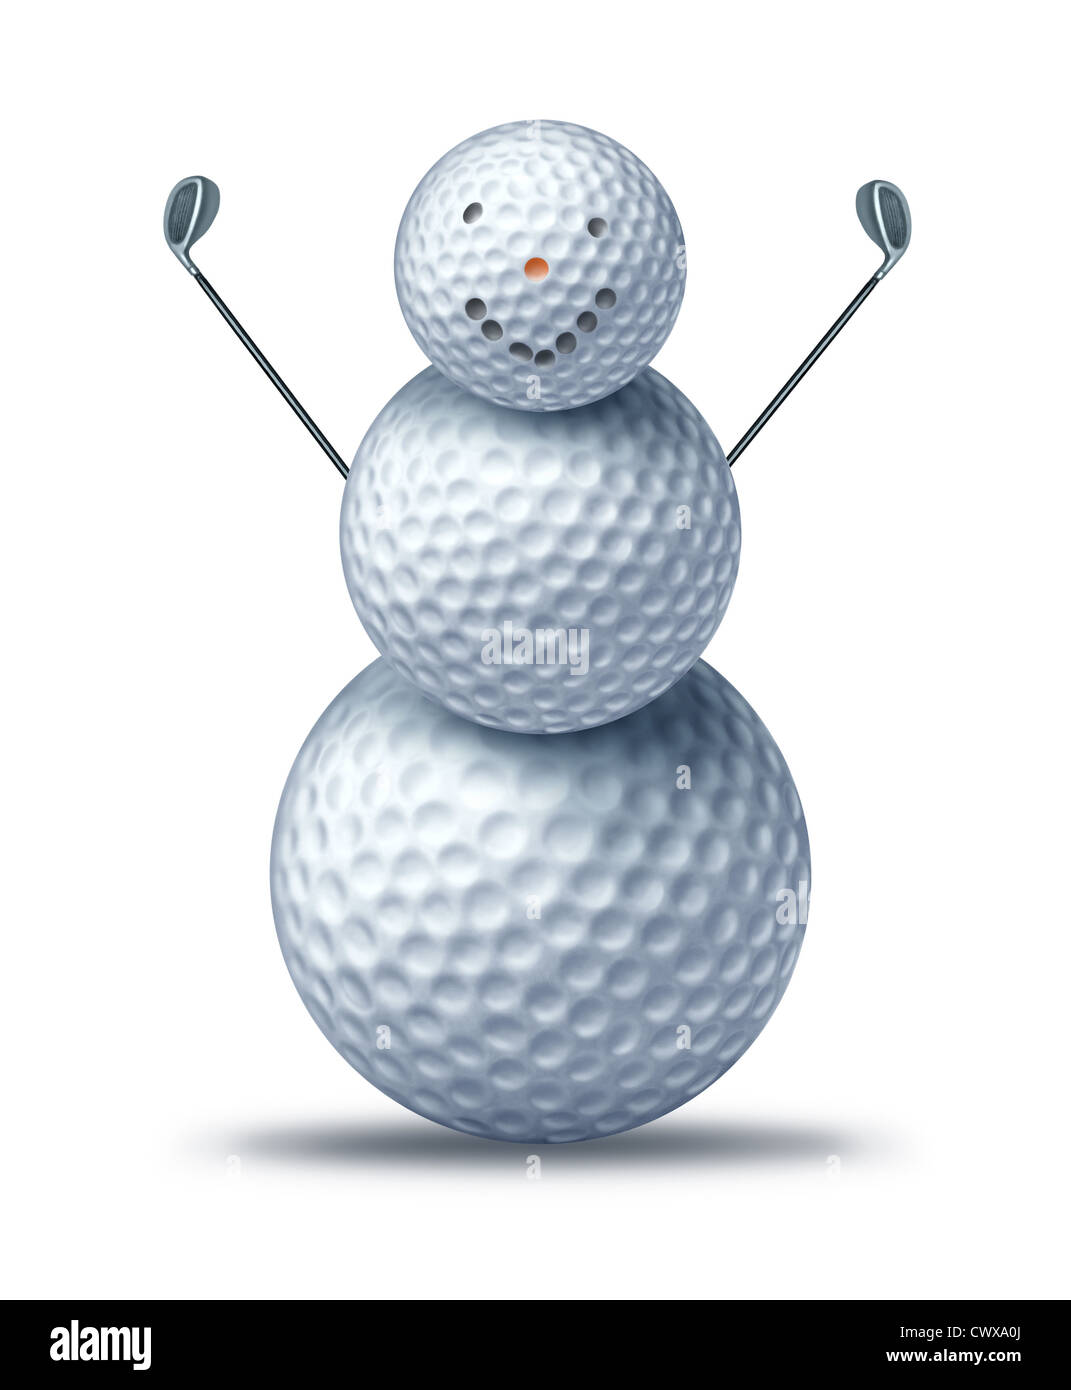 Winter-Golfen und Urlaub-Golf-Symbol dargestellt durch Golfbälle platziert, um ein glückliches Lächeln auf den Lippen Schneemann aussehen oder Schneemann hält Treiber Golfschläger zeigen Winter Urlaubsaktivitäten für saisonale Sport-Freizeit-Urlaub in einem Resort. Stockfoto